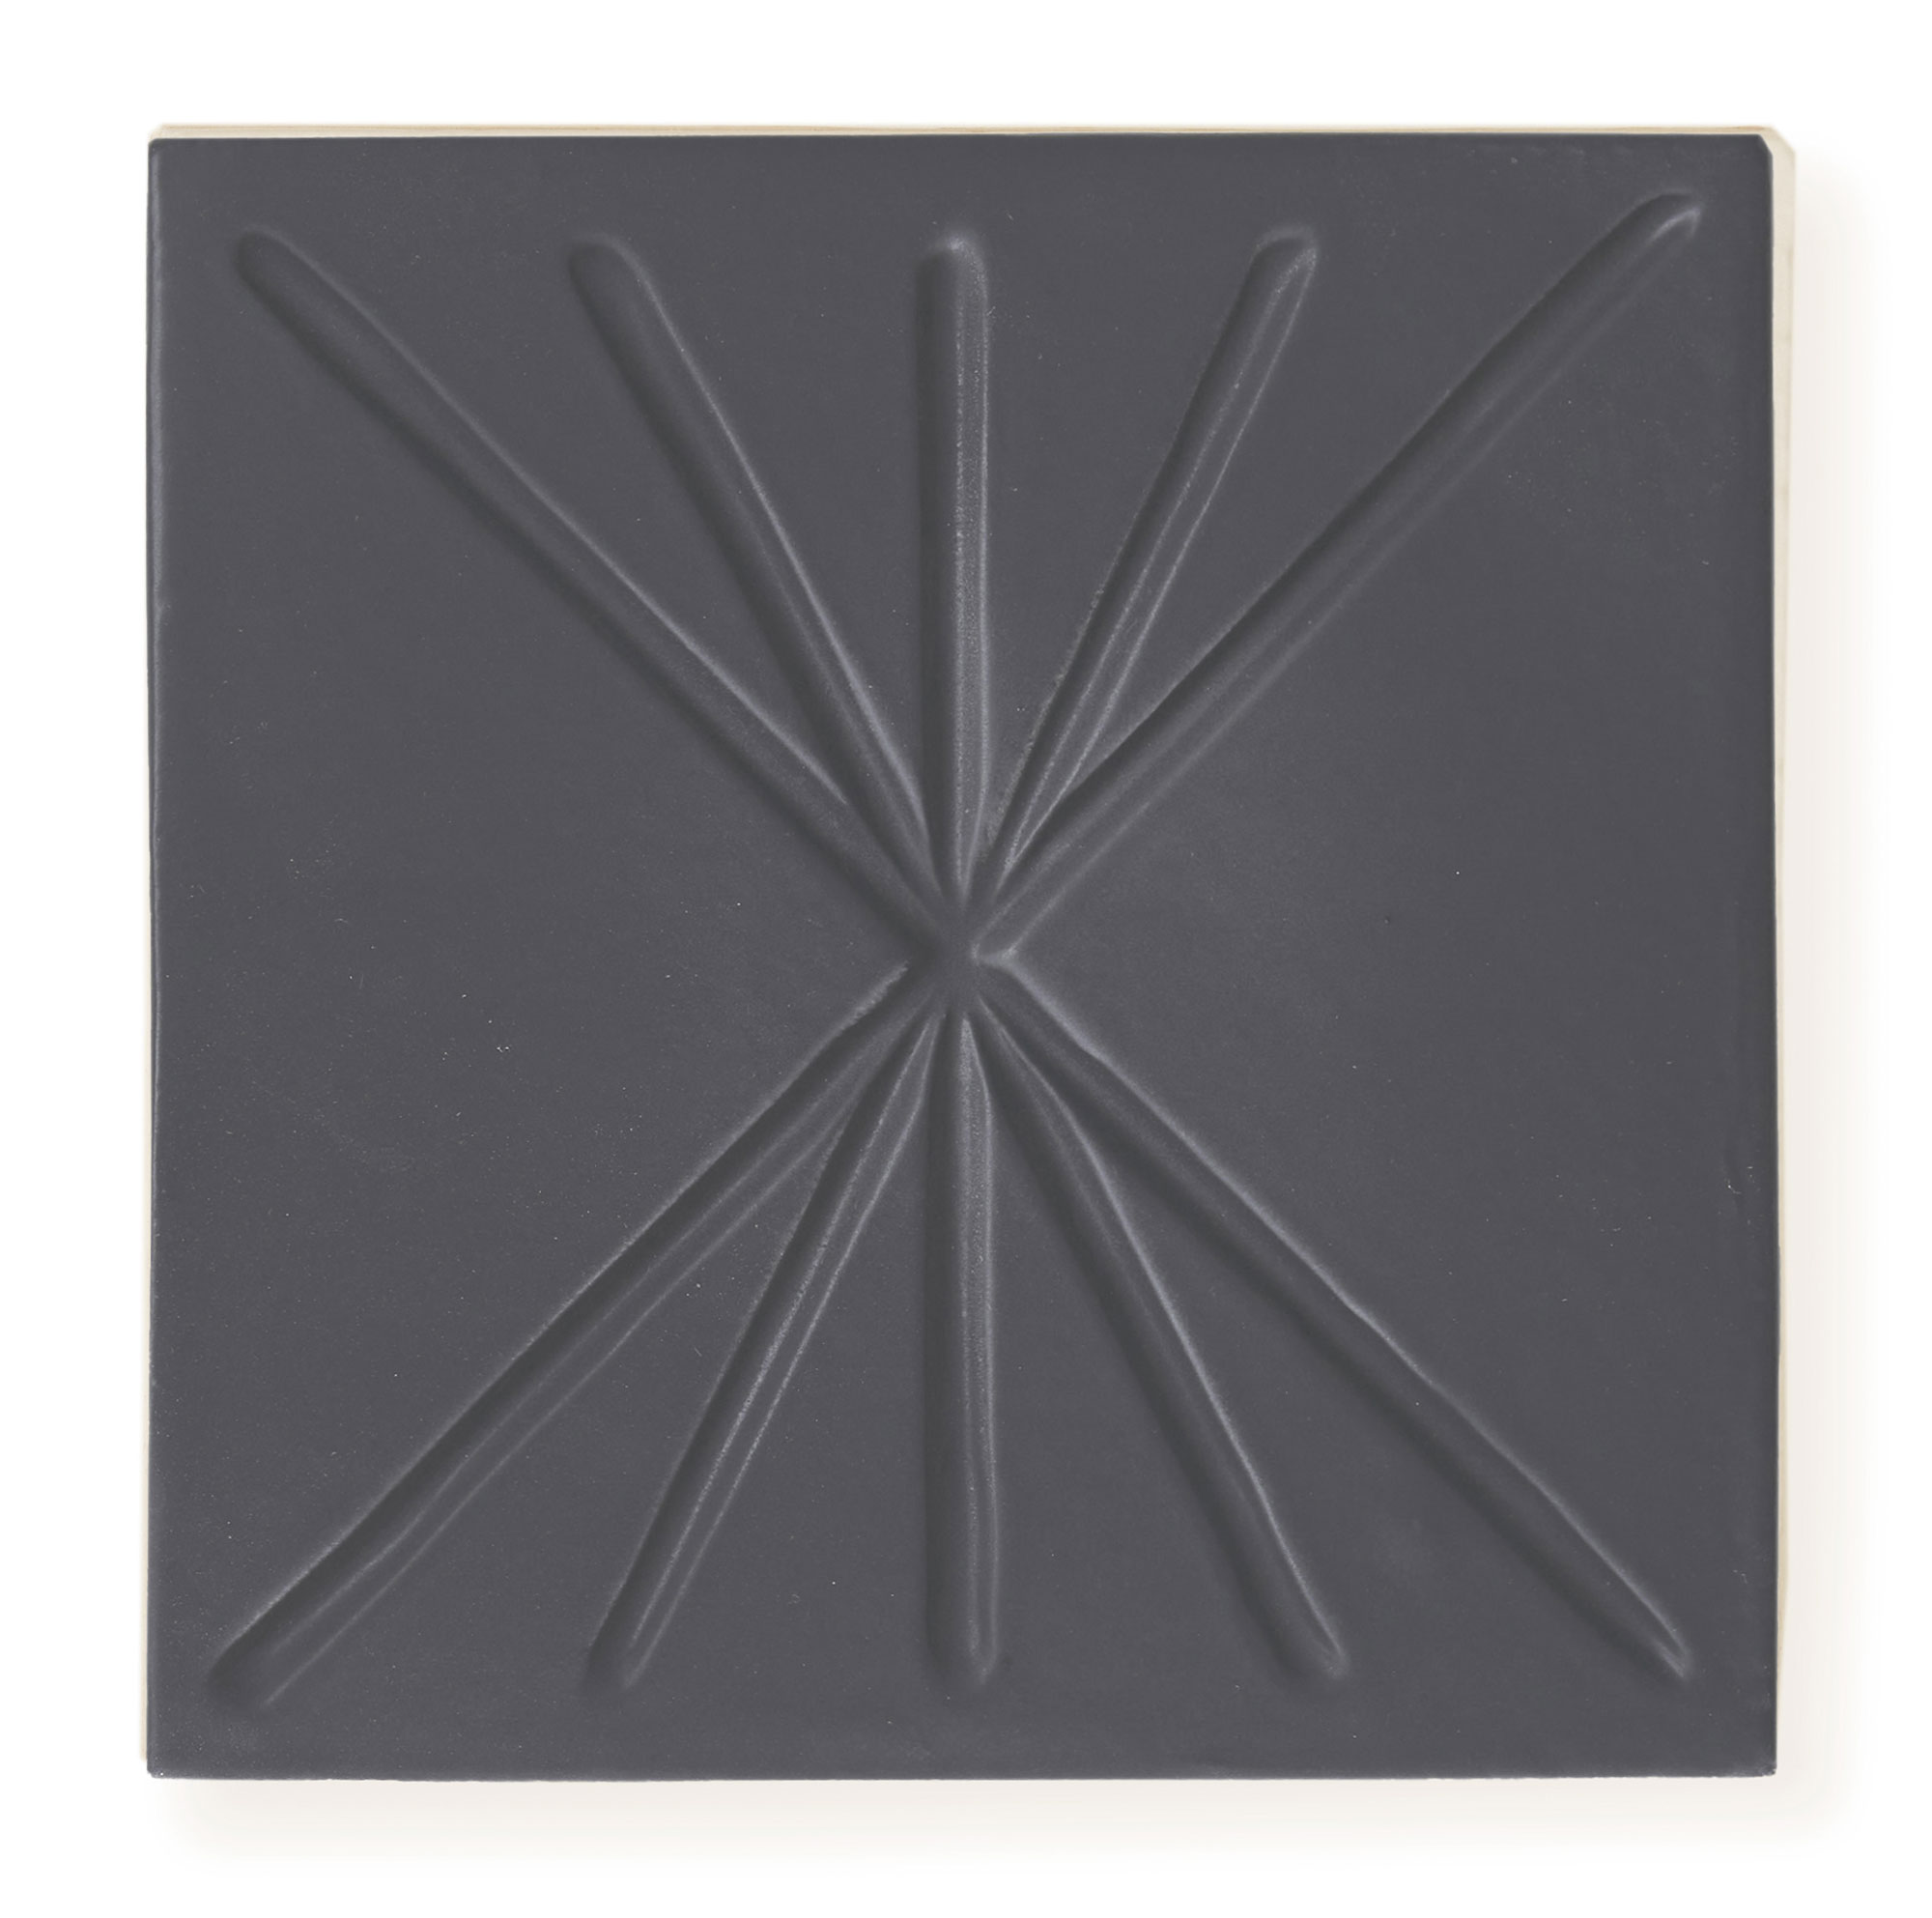 Sample: Tepoz Black 6x6 - Dimensional Relief Artisan Ceramic Tile